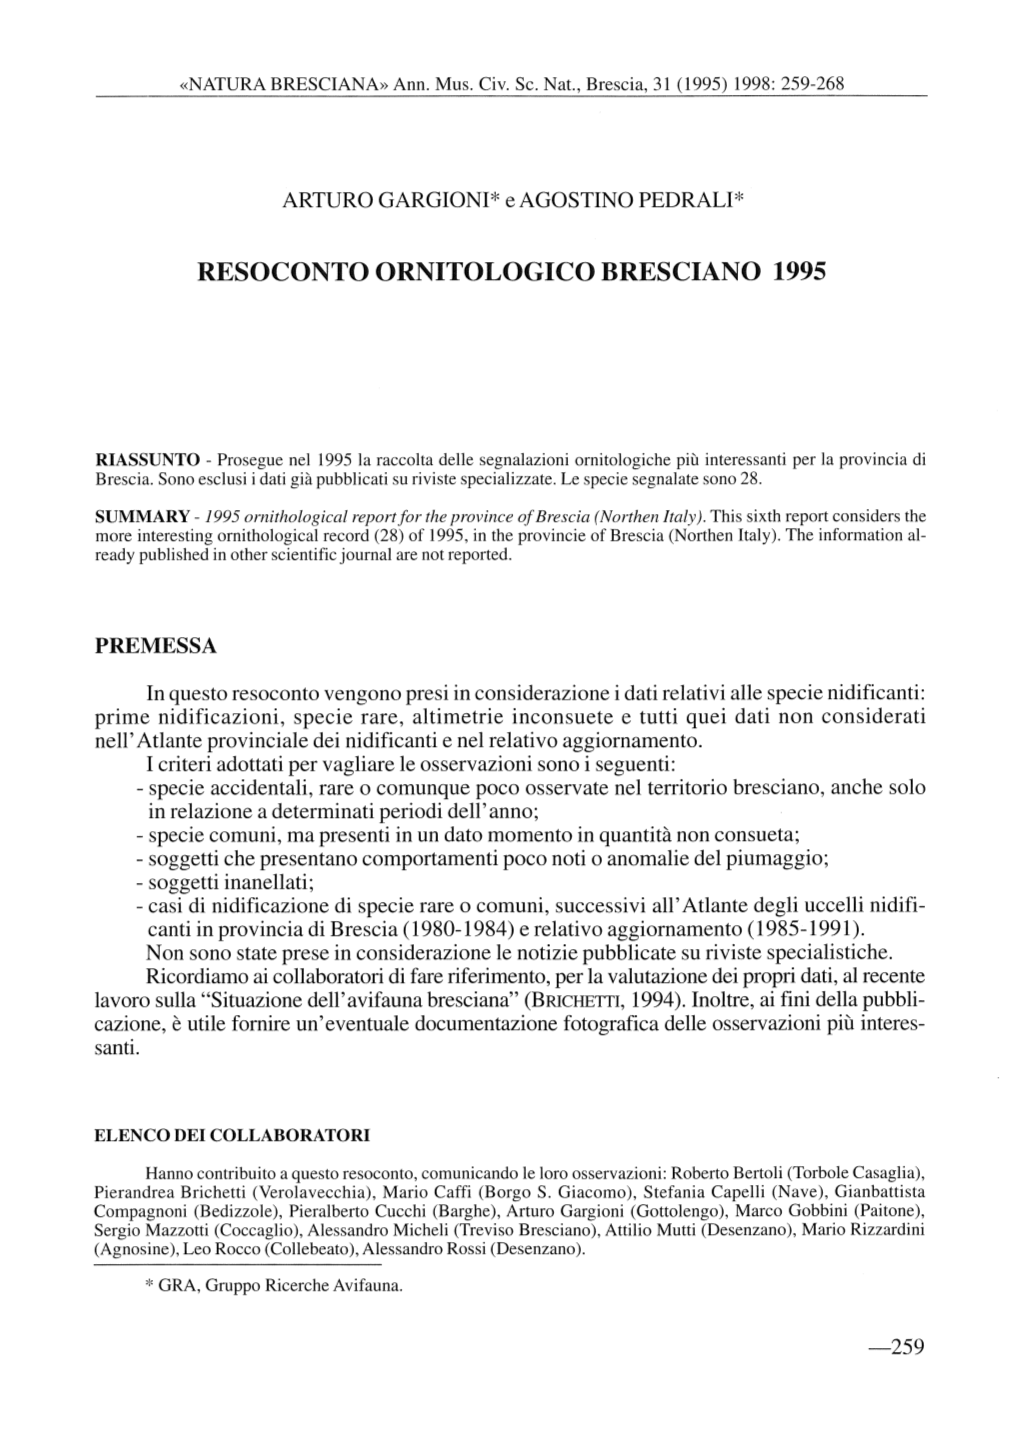 Resoconto Ornitologico Bresciano 1995